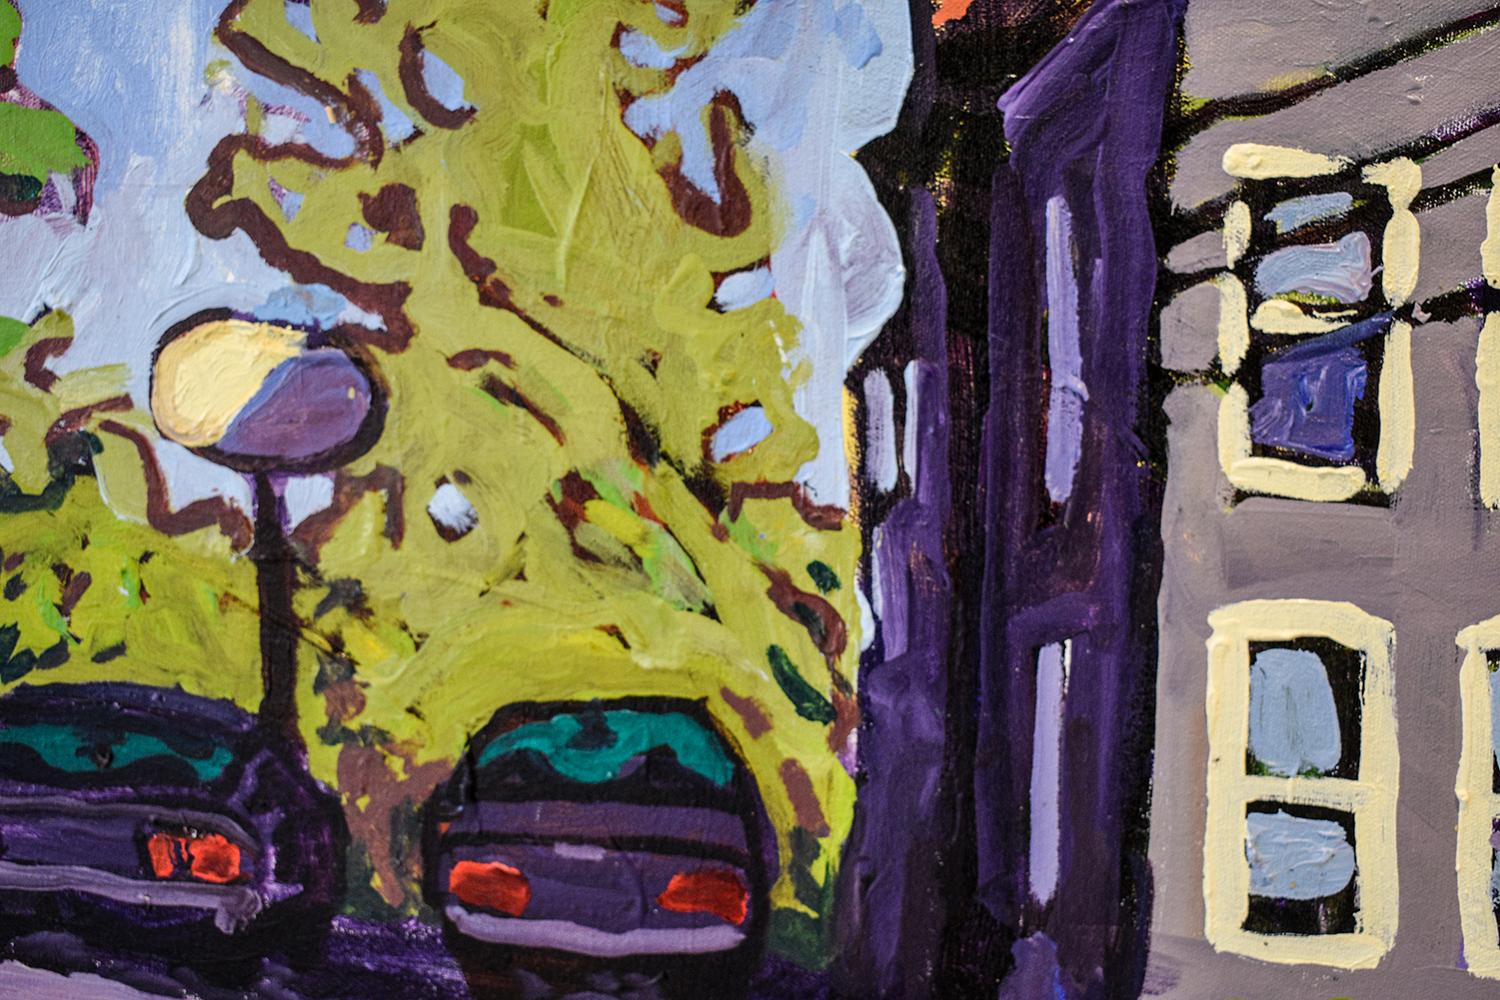 31 Washington Street (peinture de paysage urbain contemporain de Building & Power Lines) - Painting de Dan Rupe